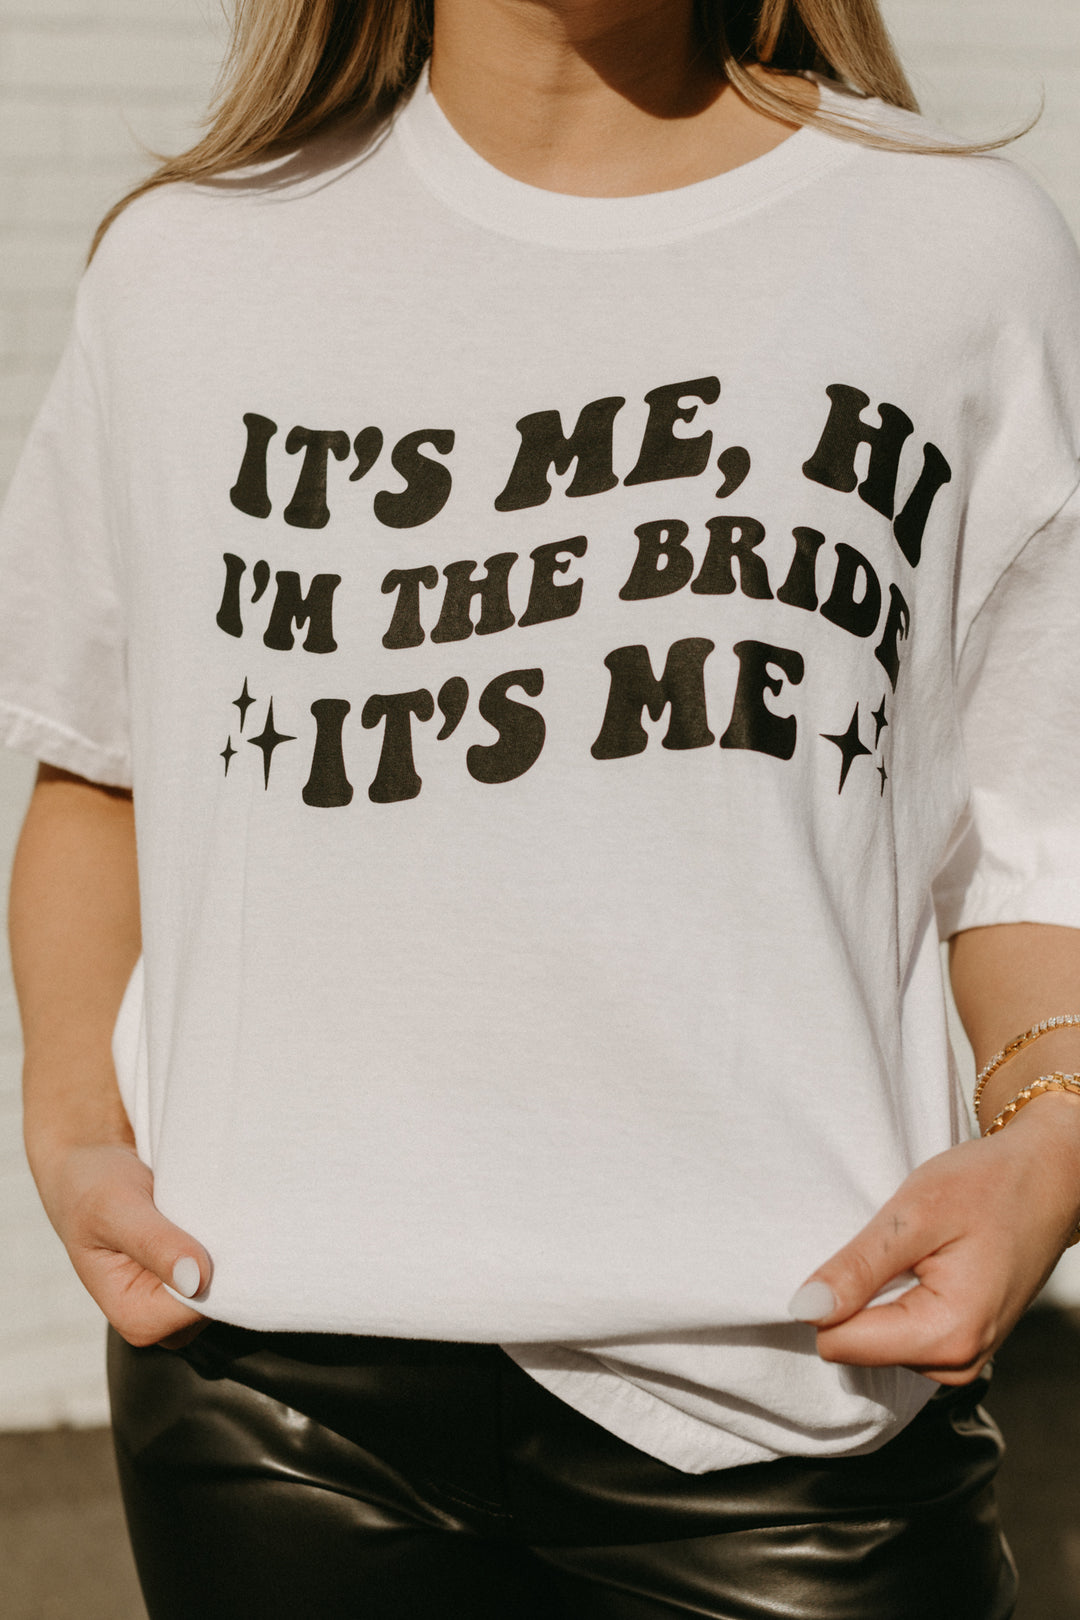 I'm The Bride It's Me Graphic T-shirt